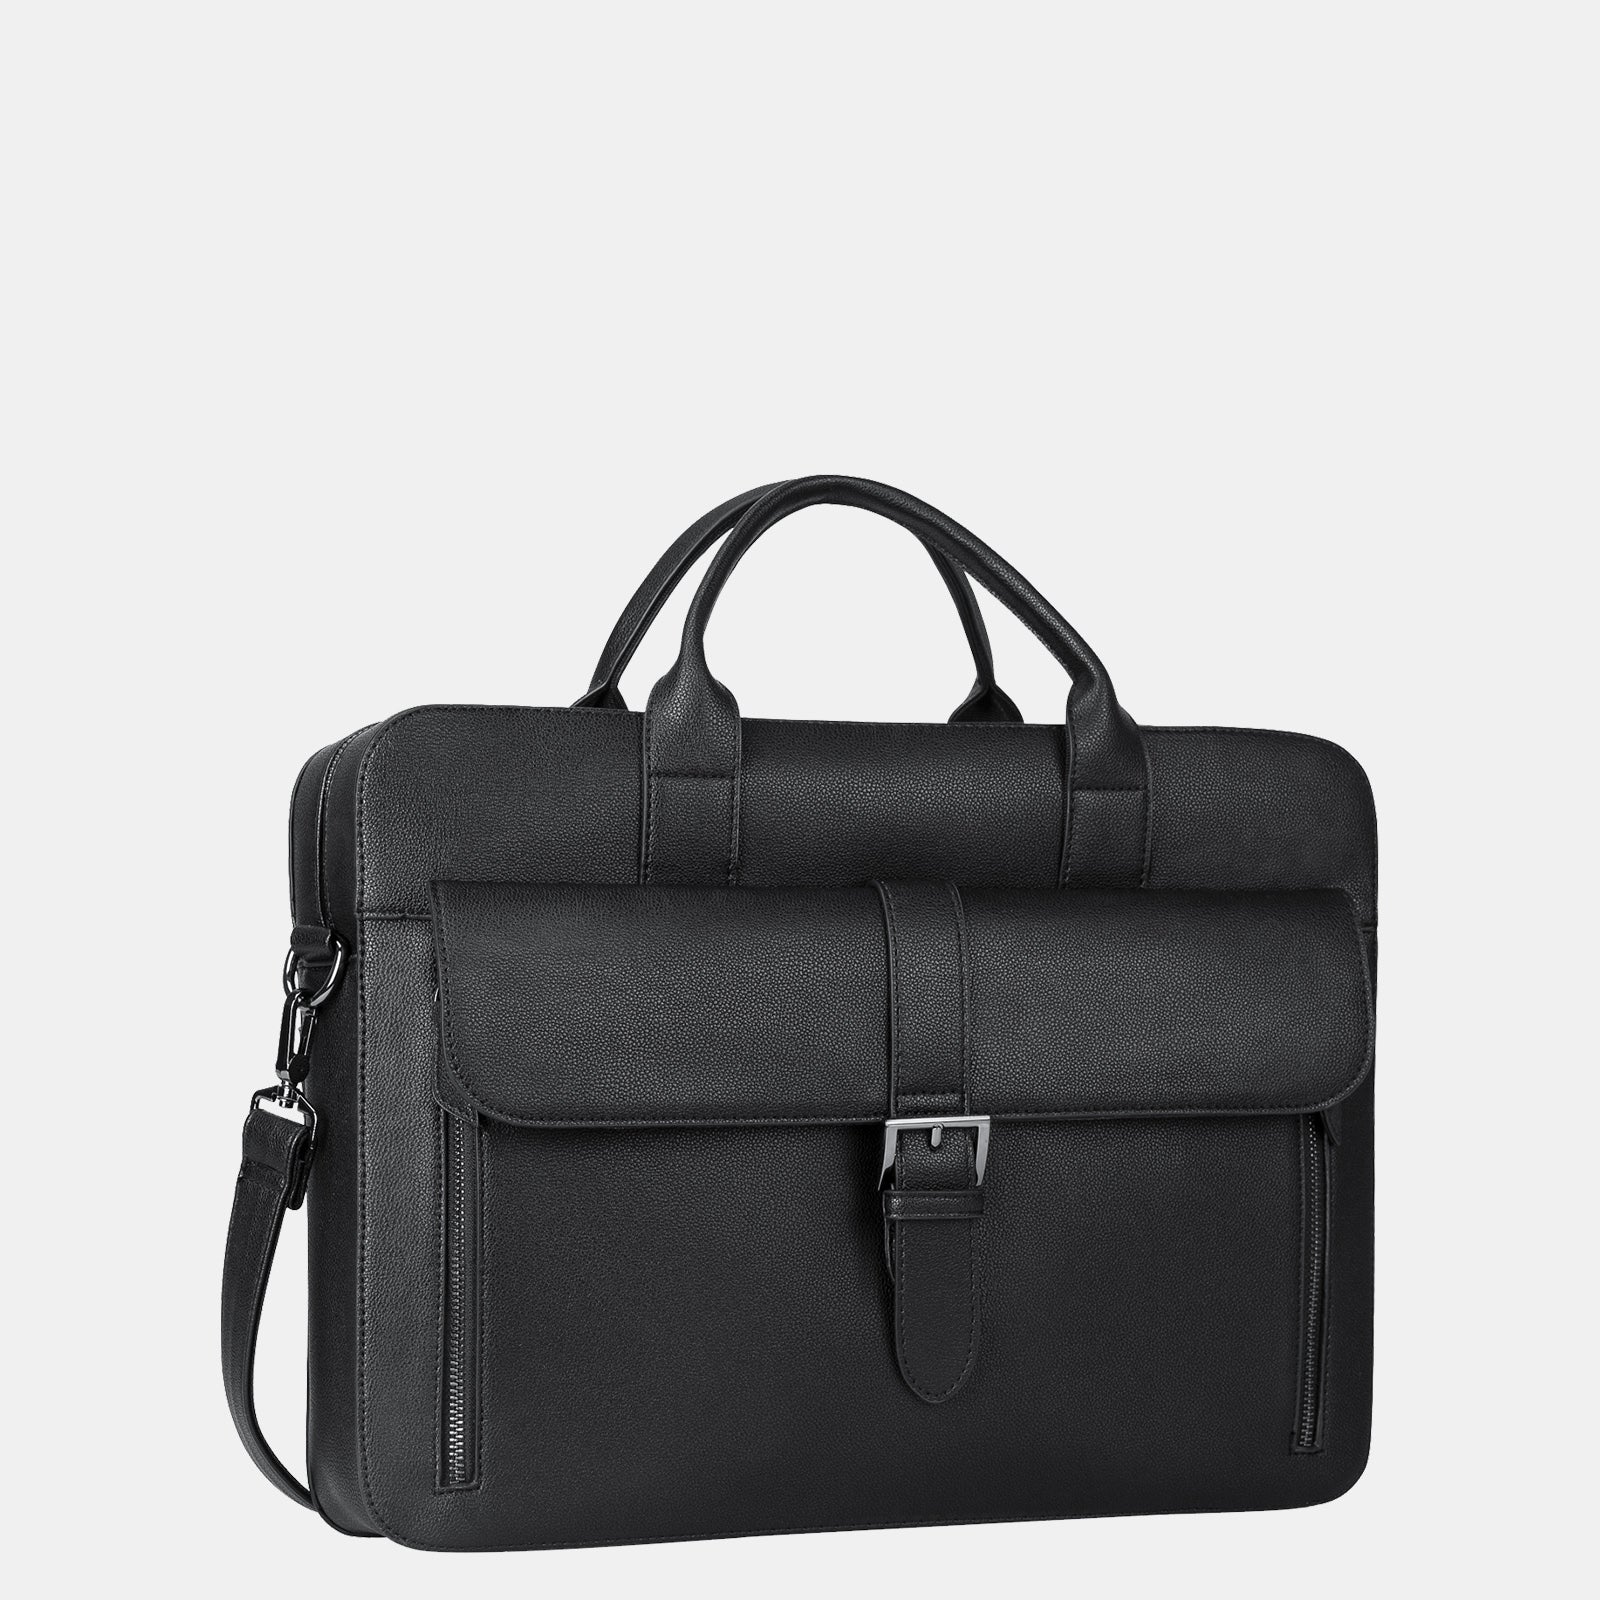 Estarer Men's PU Leather Laptop Briefcase